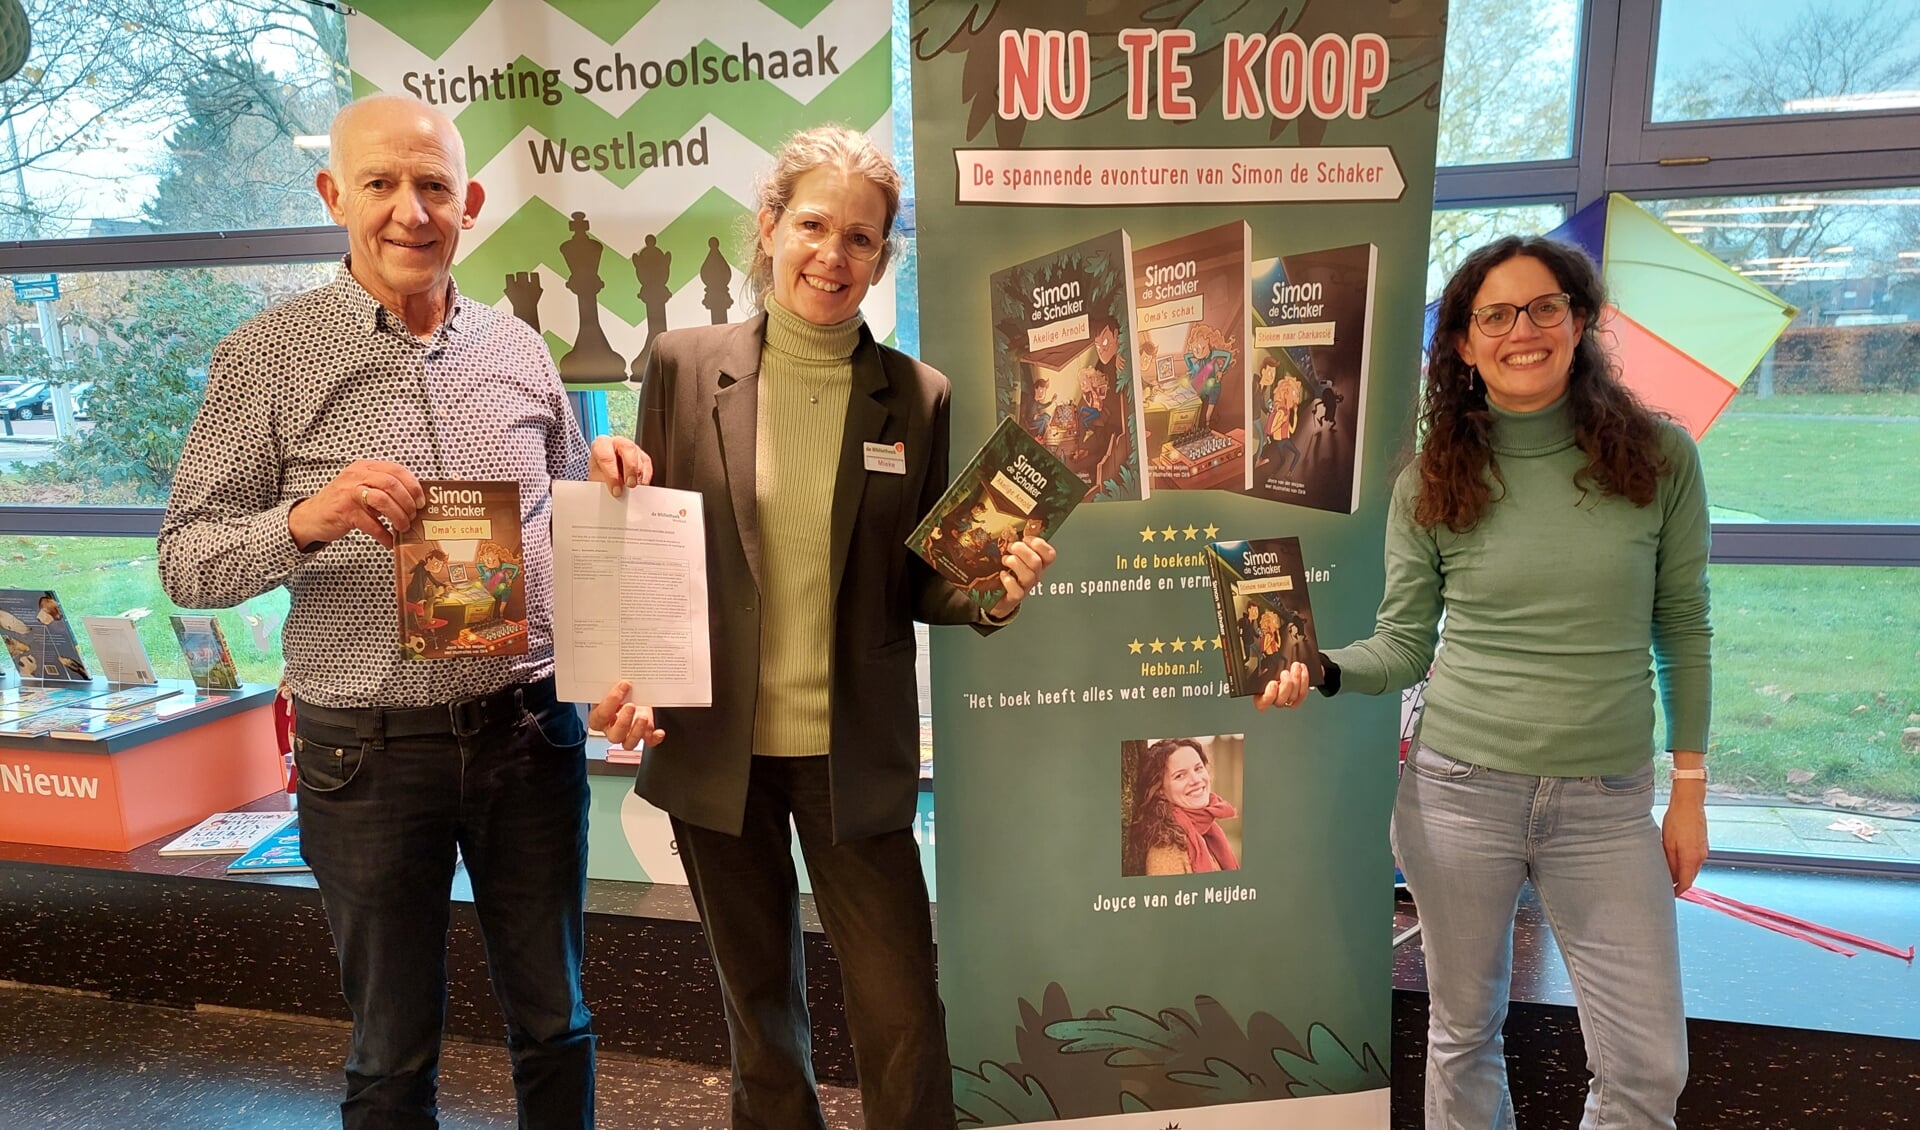 V.l.n.r.: Ard Dekker, voorzitter Stichting Schoolschaak Westland, Mieke Wits, Bibliotheek Naaldwijk en Joyce van der Meijden, schrijfster ‘Simon de Schaker’.